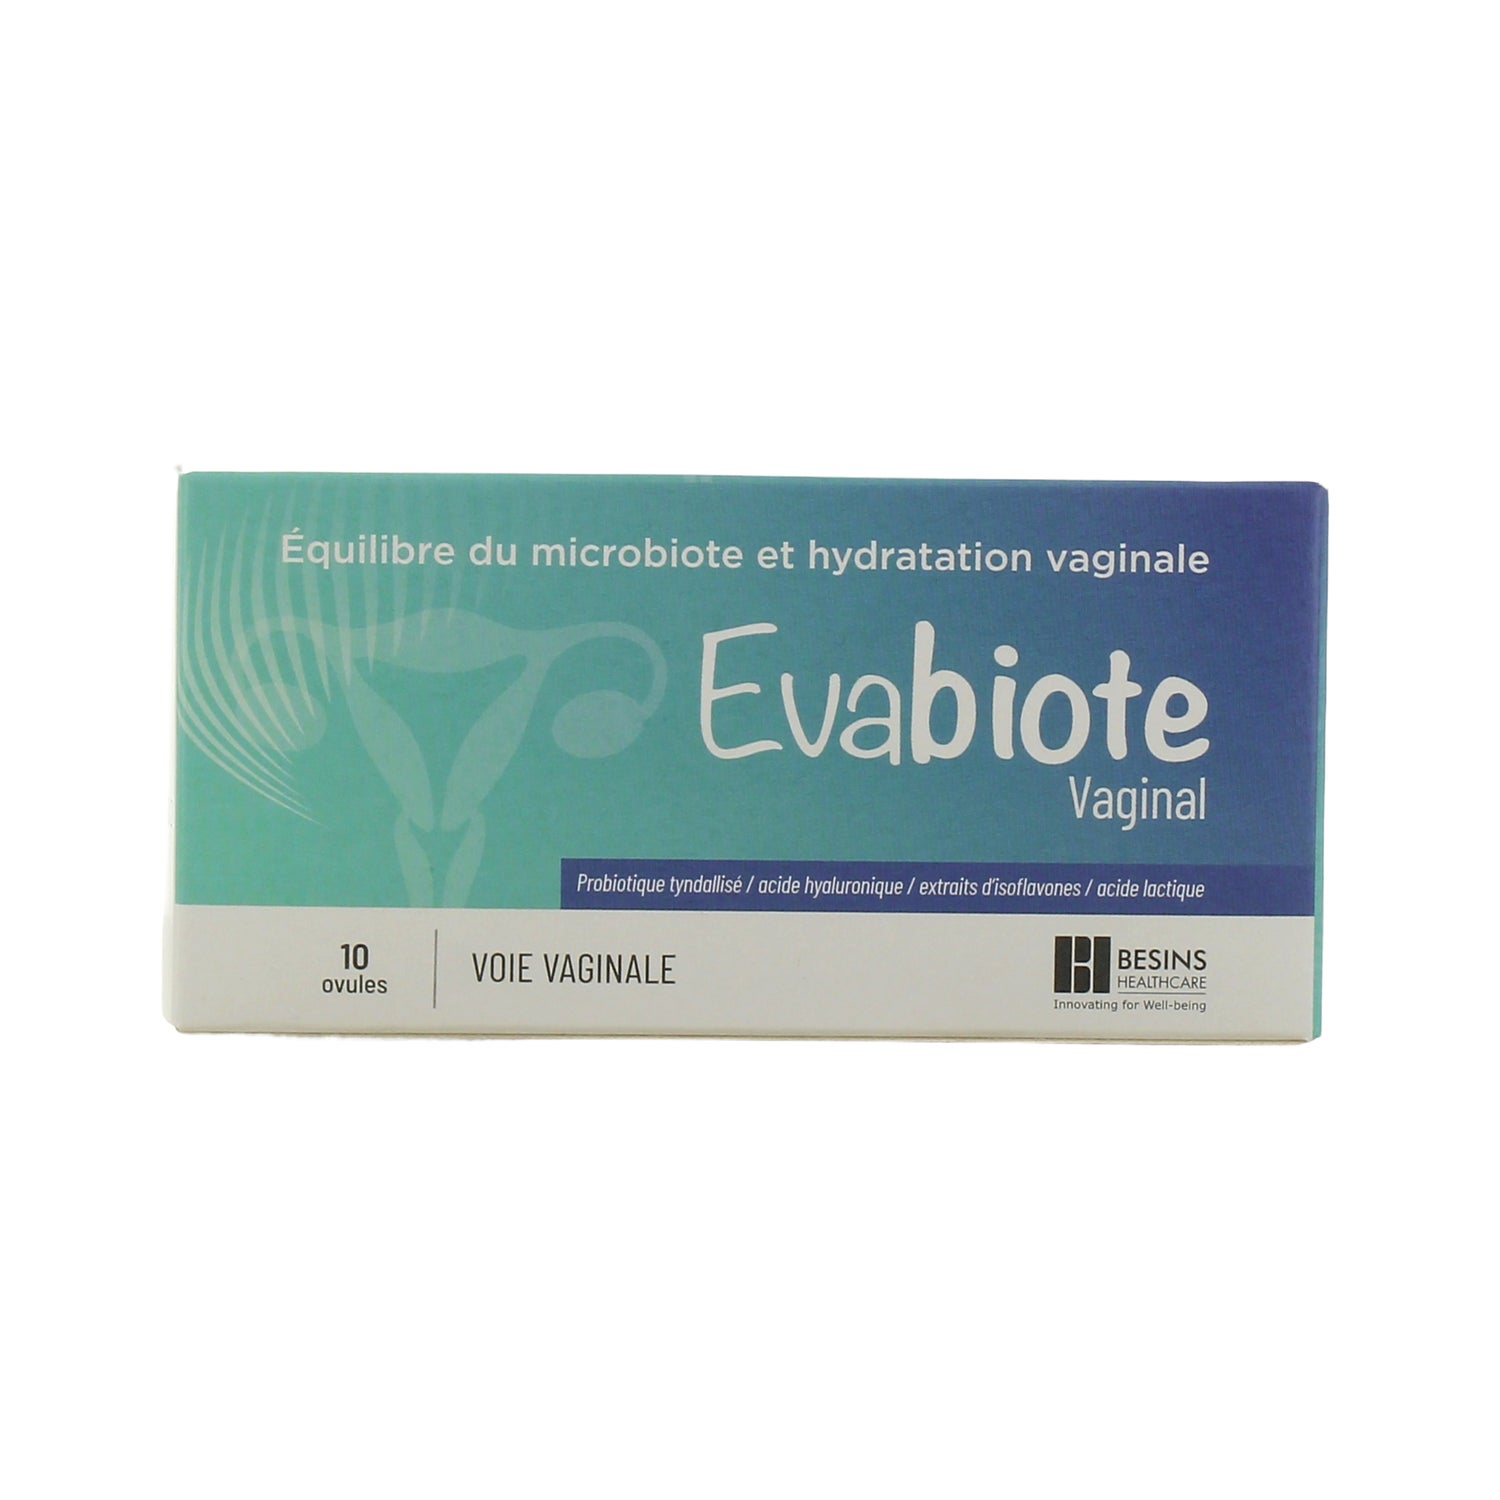 Besins Healthcare Evabiote Vaginal 10 Ovules | DocMorris France